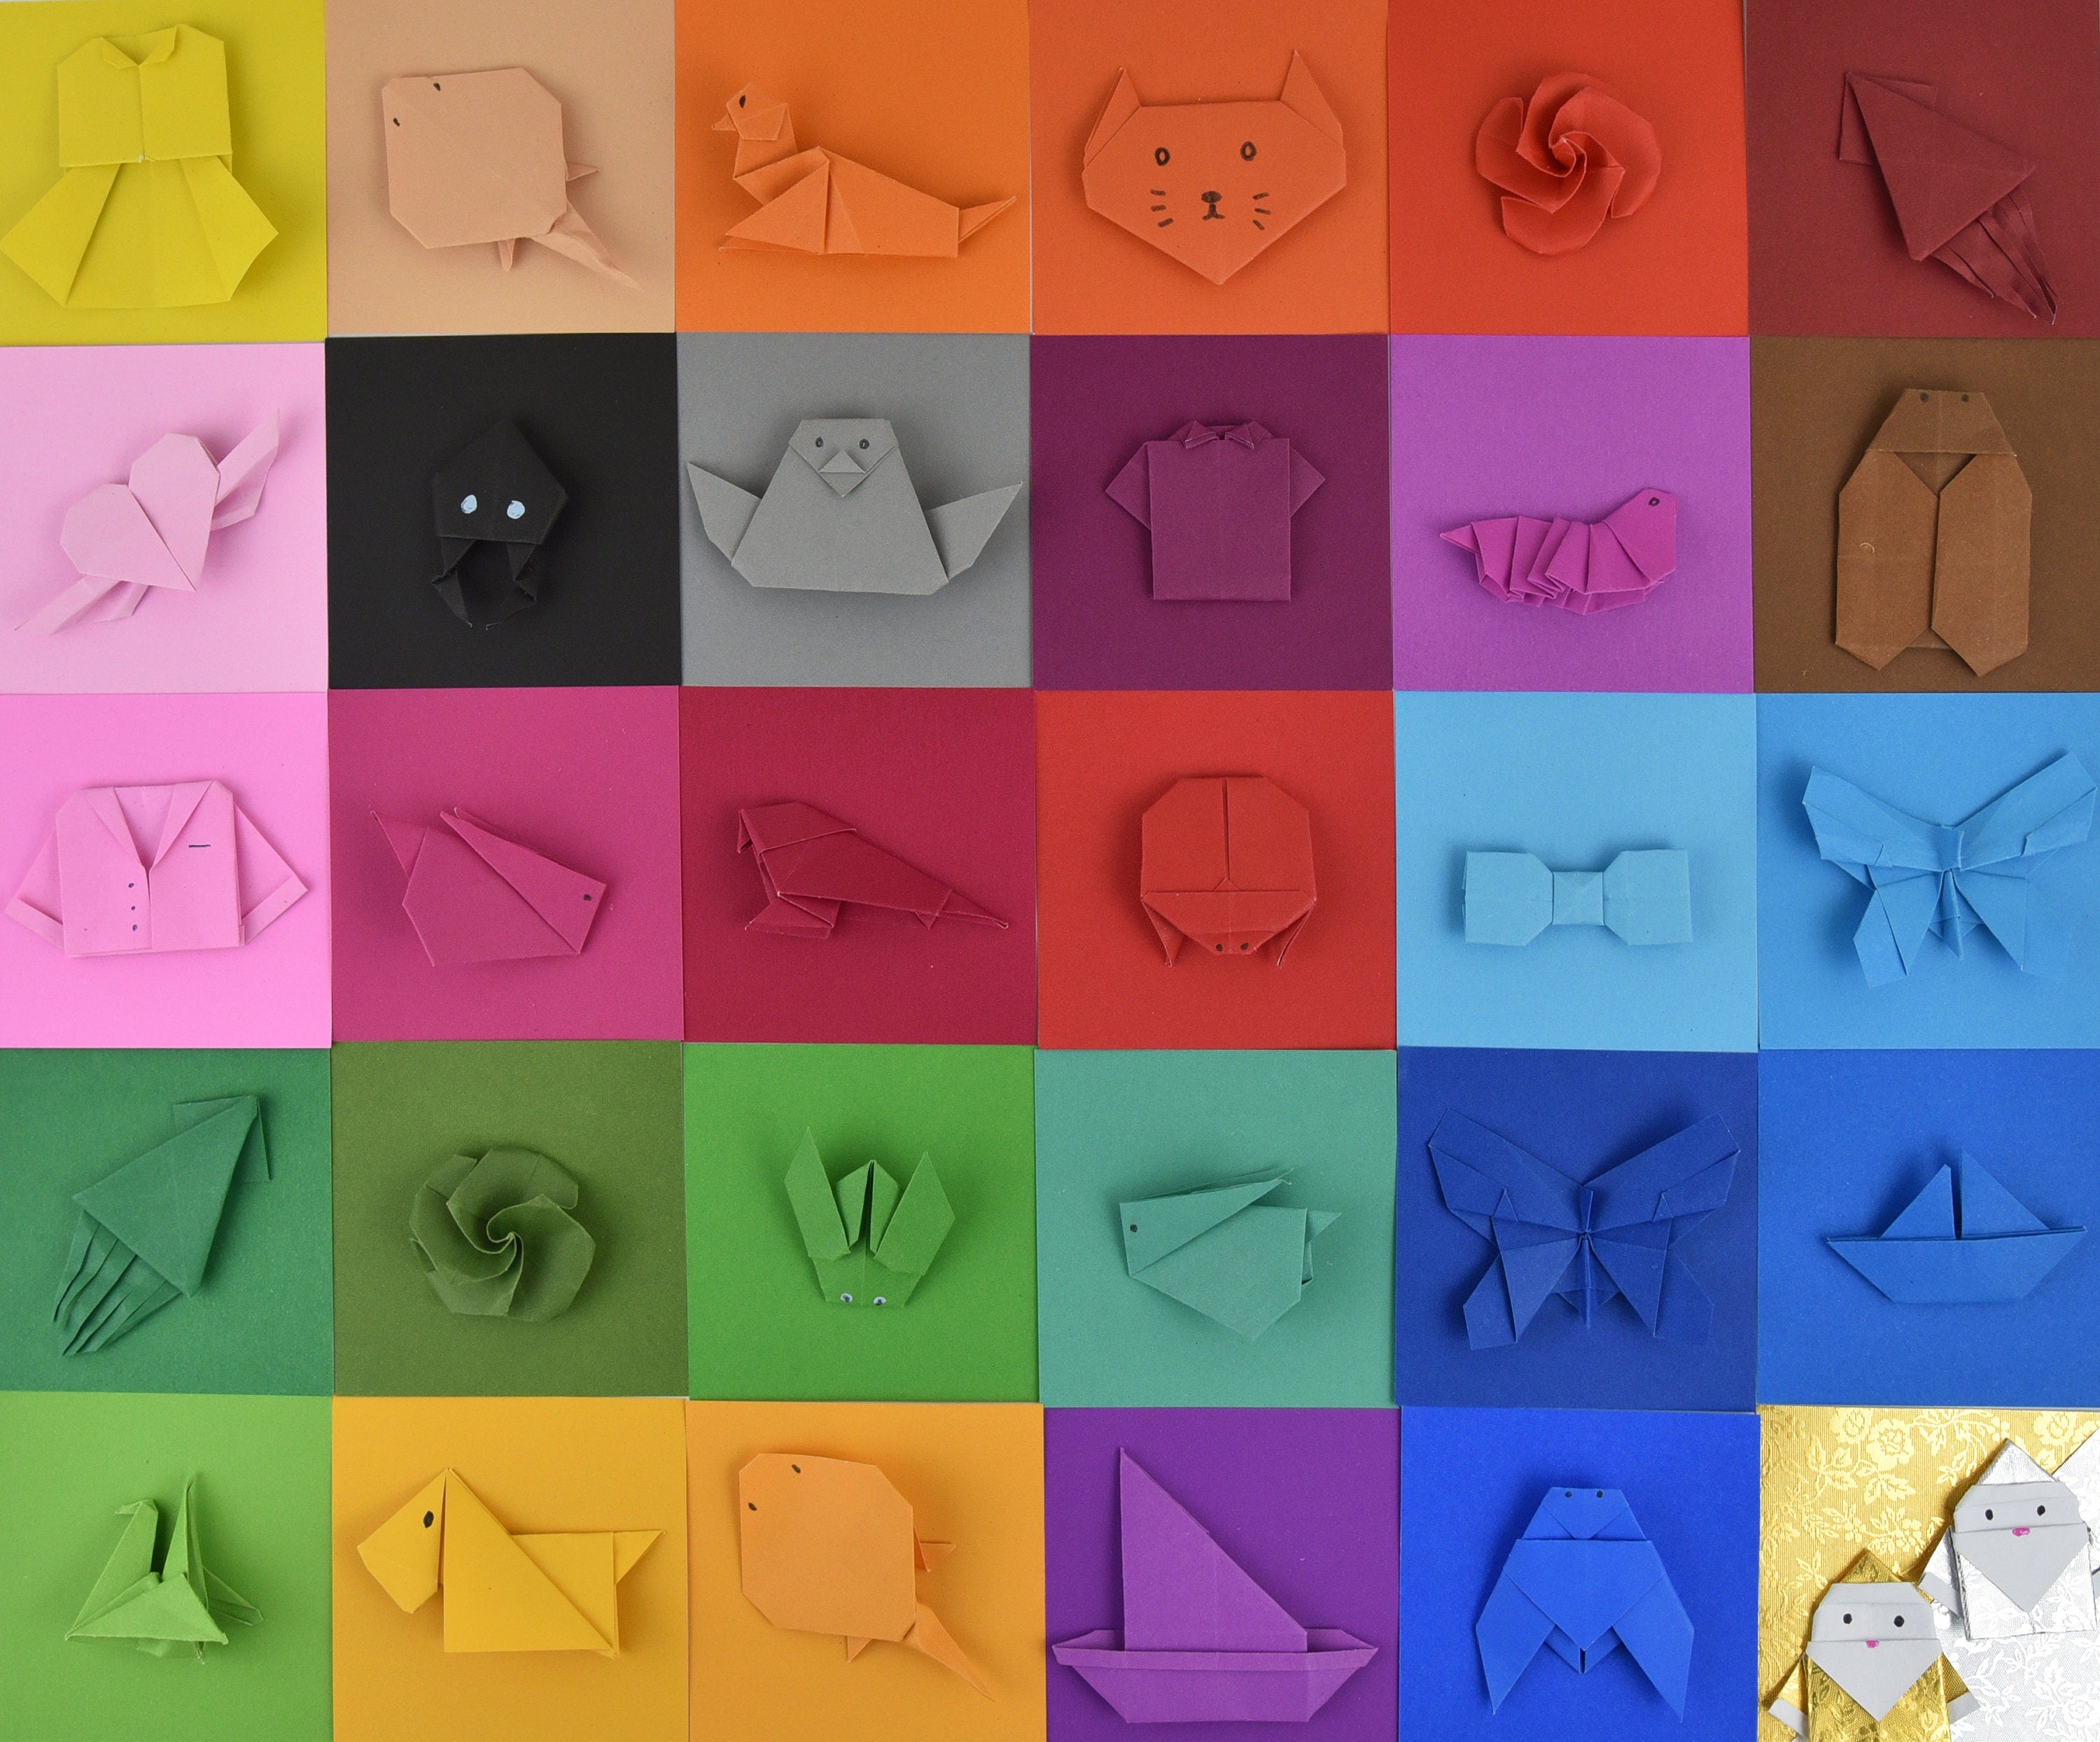 100 Hojas de Papel Origami - 6x6 pulgadas - Paquete de Papel Cuadrado para Plegar, Grullas de Origami y Decoración - S17